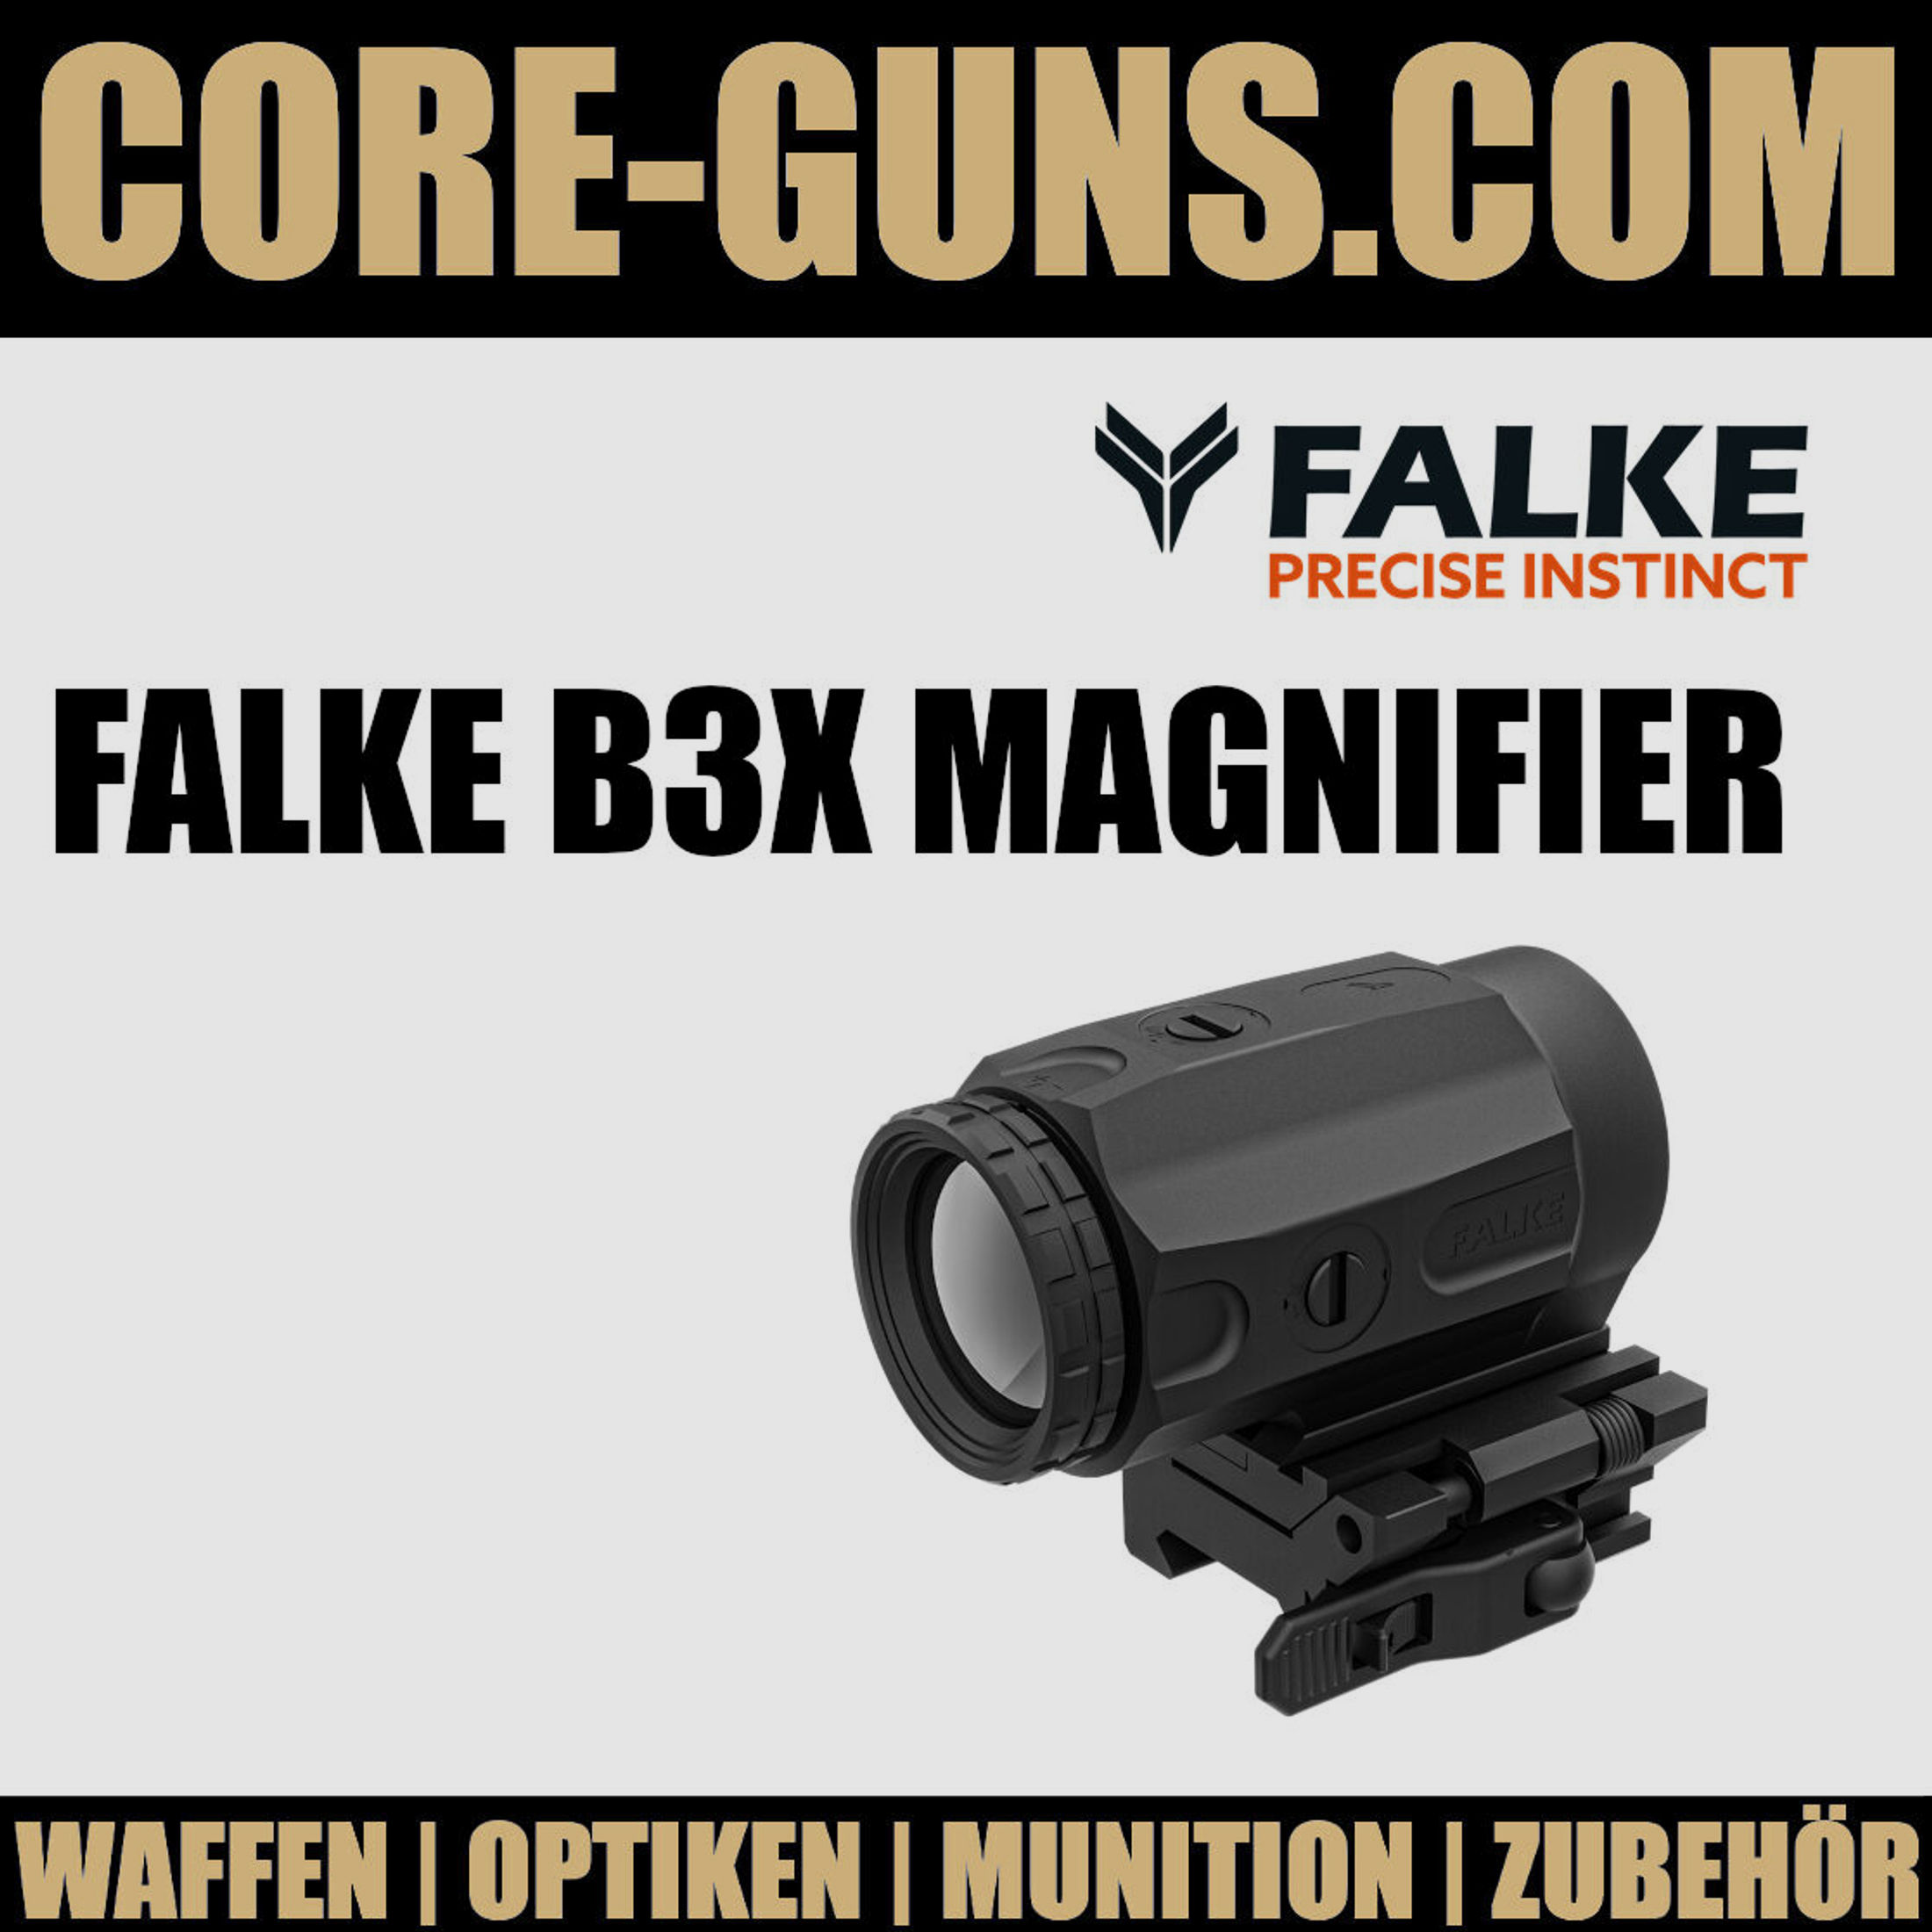 Falke B3X Magnifier	 Falke Schmeisser Germany